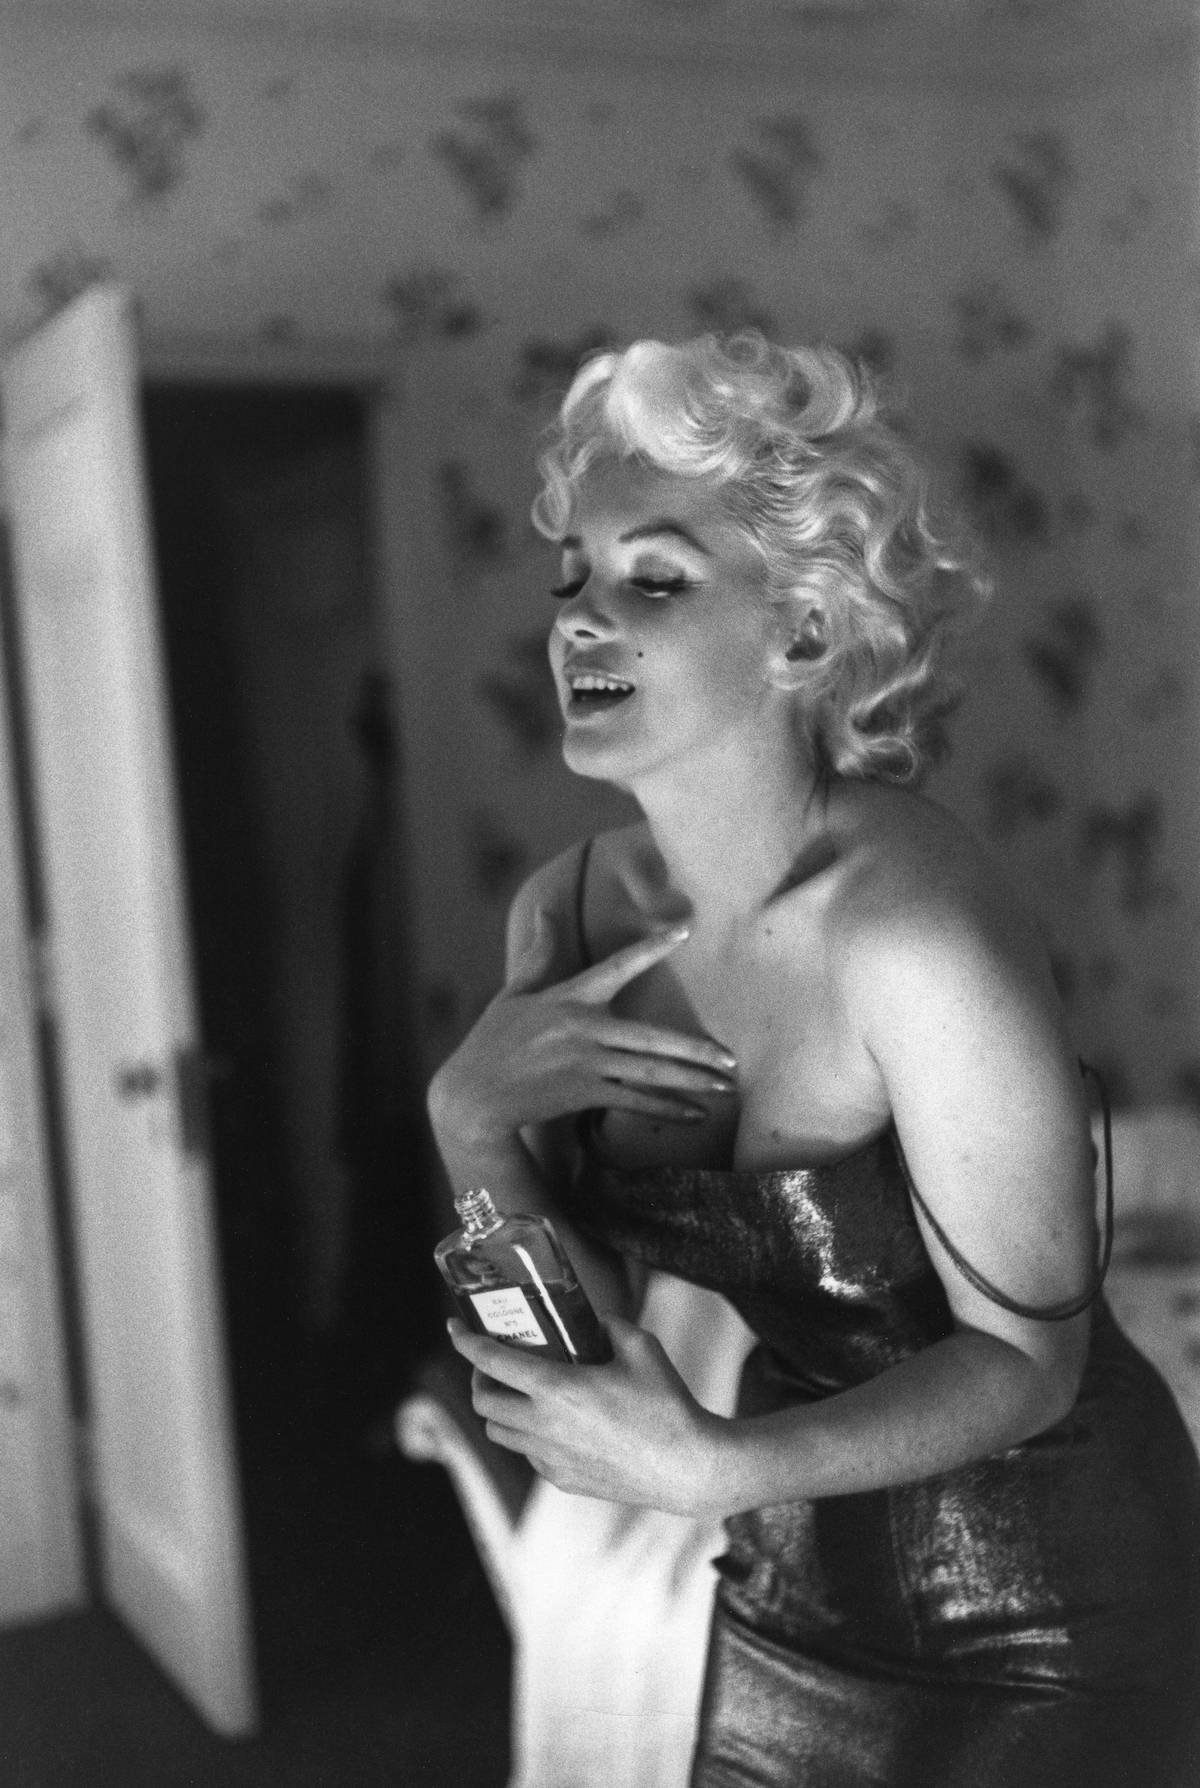 Aktorka Marilyn Monroe ubrana w suknię na ramiączka trzyma w ręku perfumy Chanel No. 5